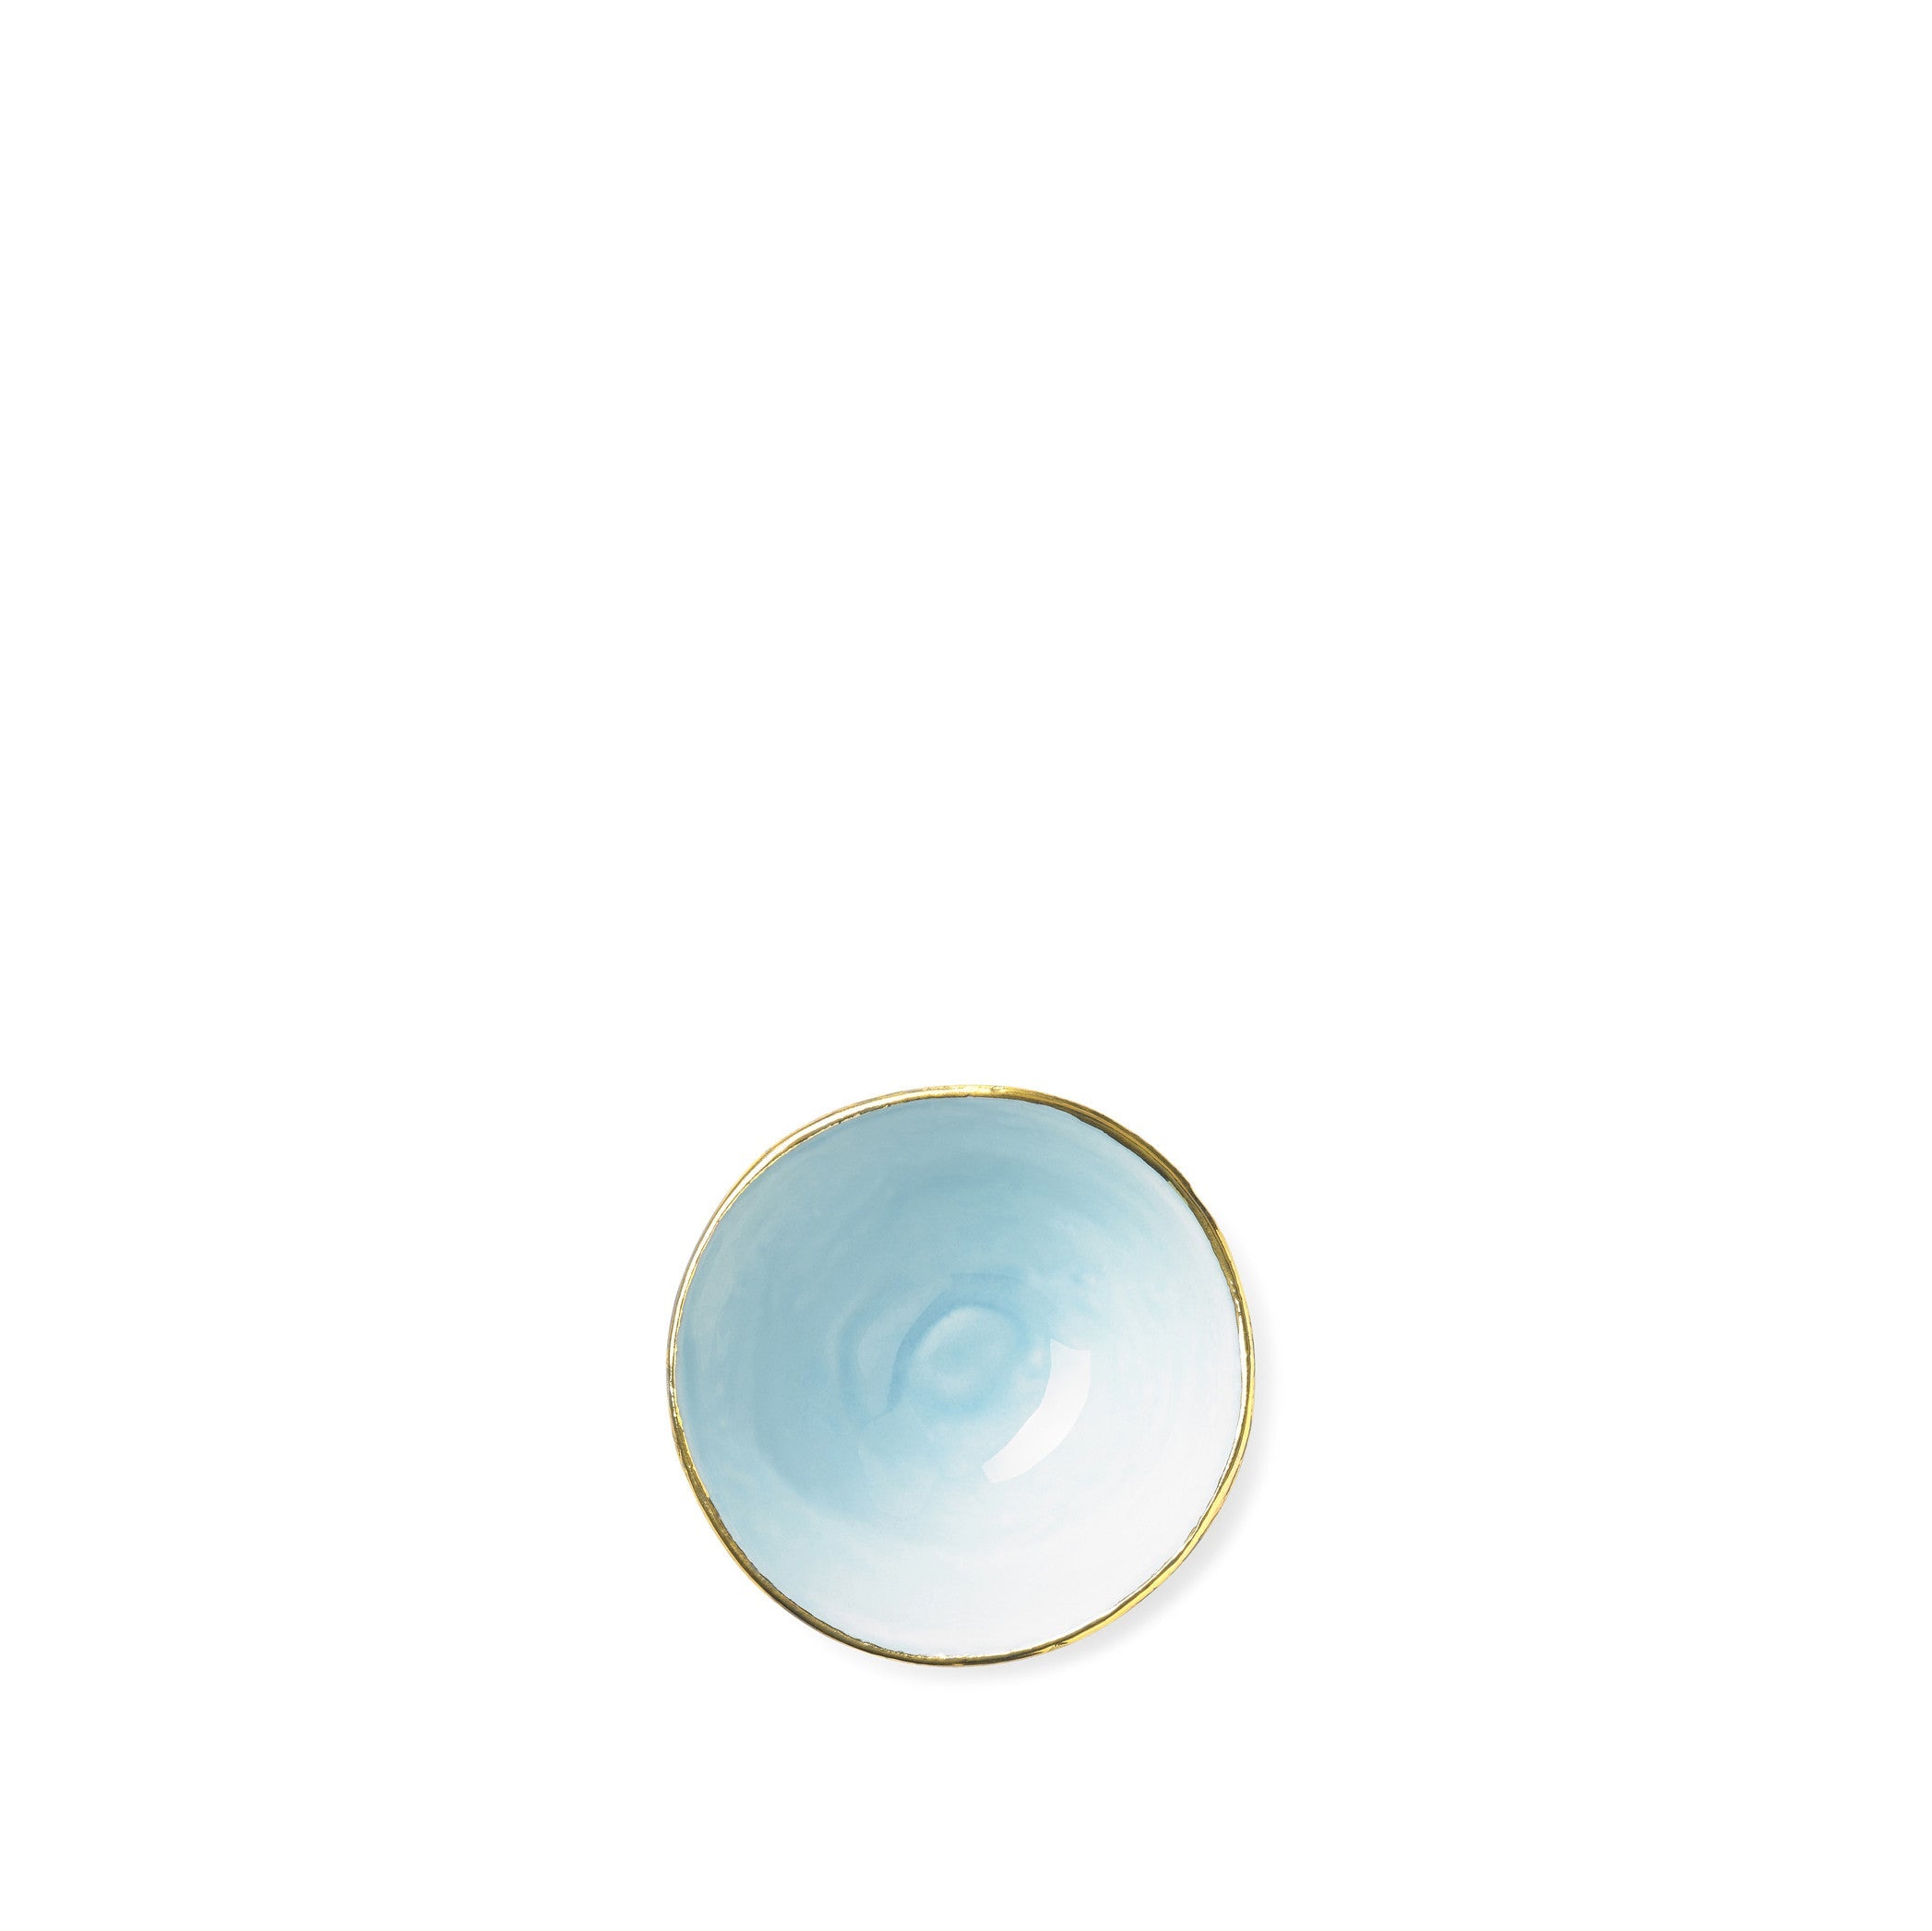 Small Light Blue Ceramic Bowl with Gold Rim, 6cm